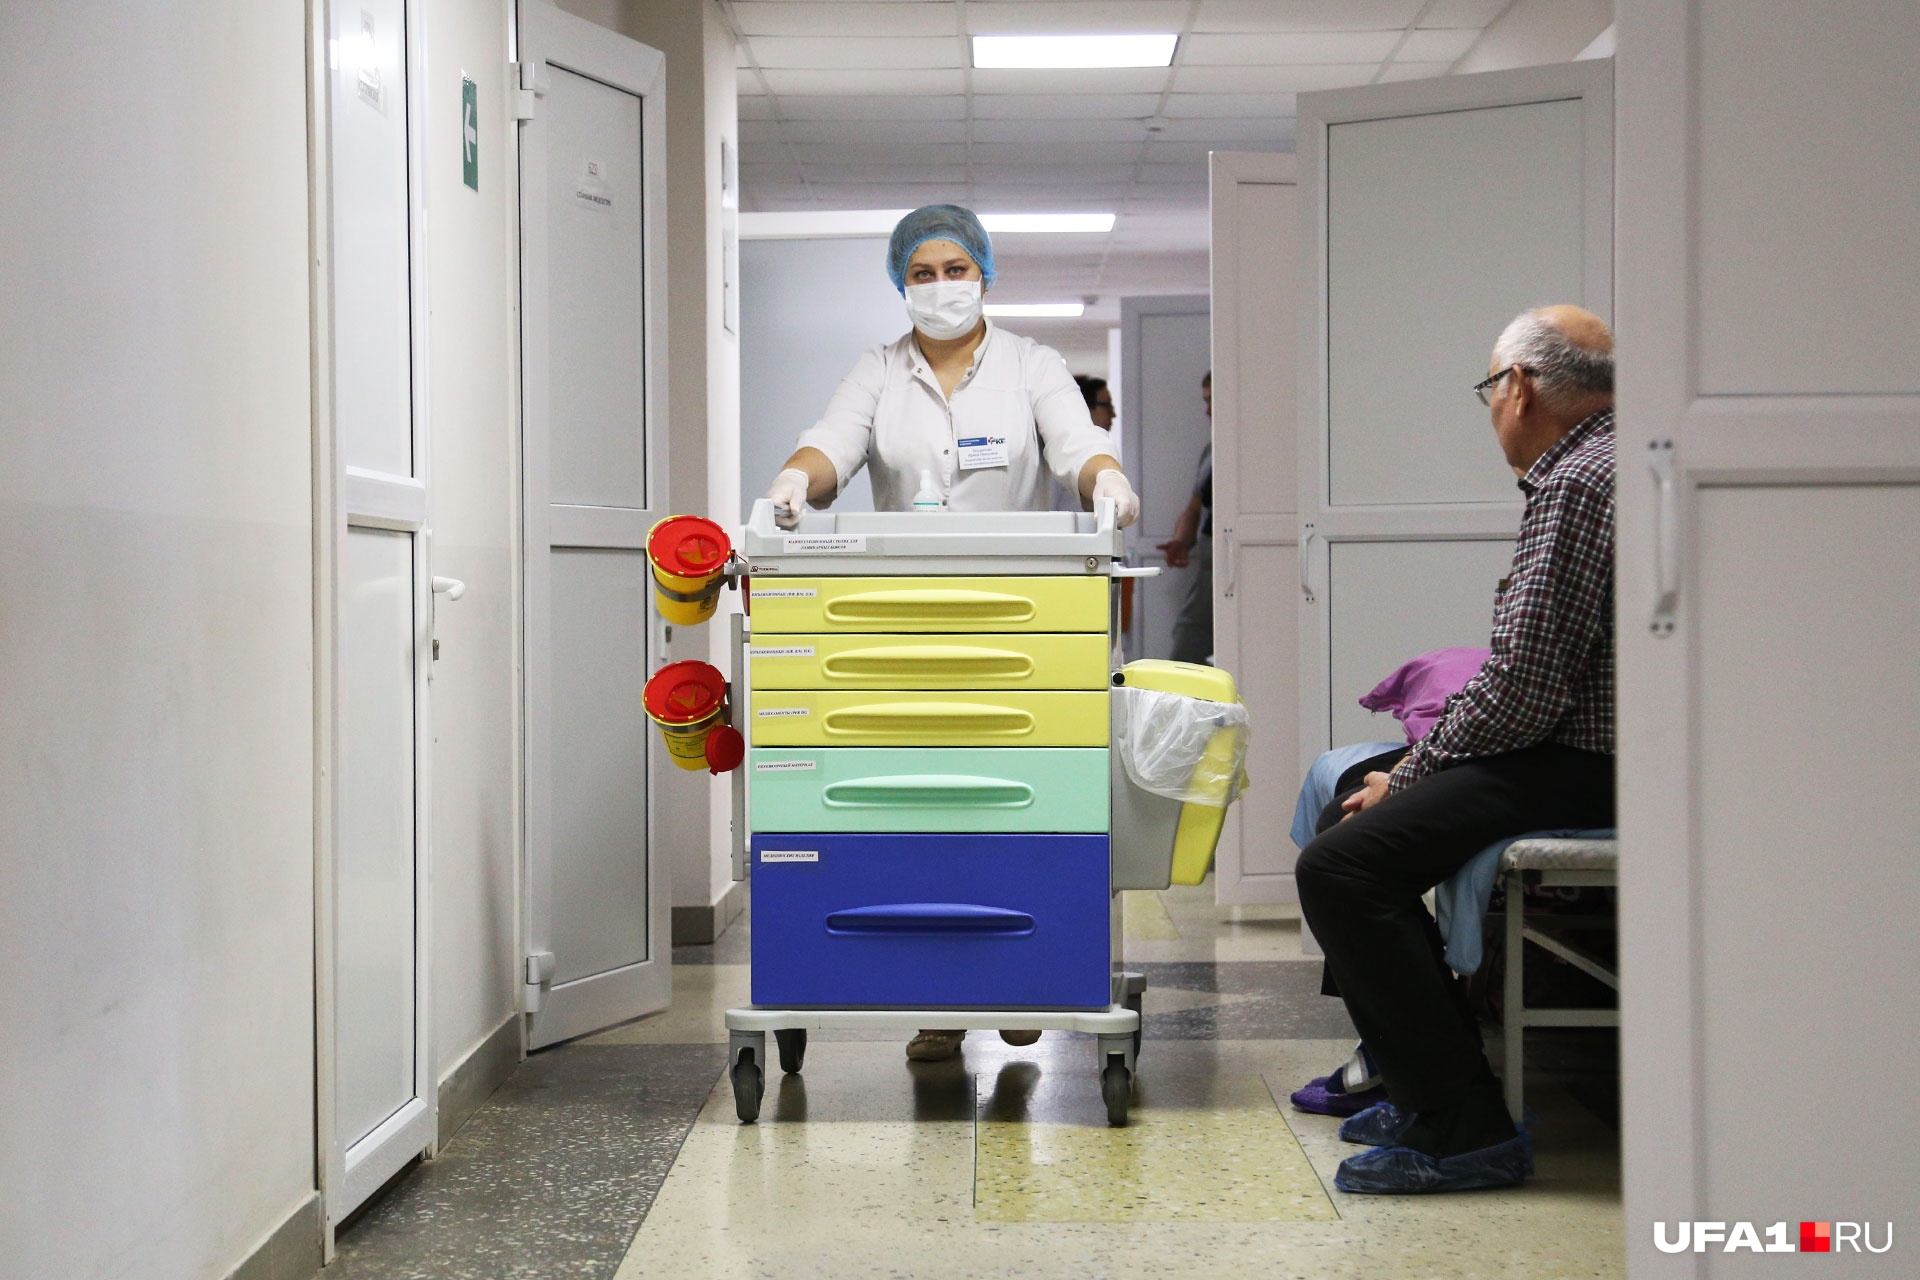 Пациентов в отделении лечат бесплатно по программе госгарантий 